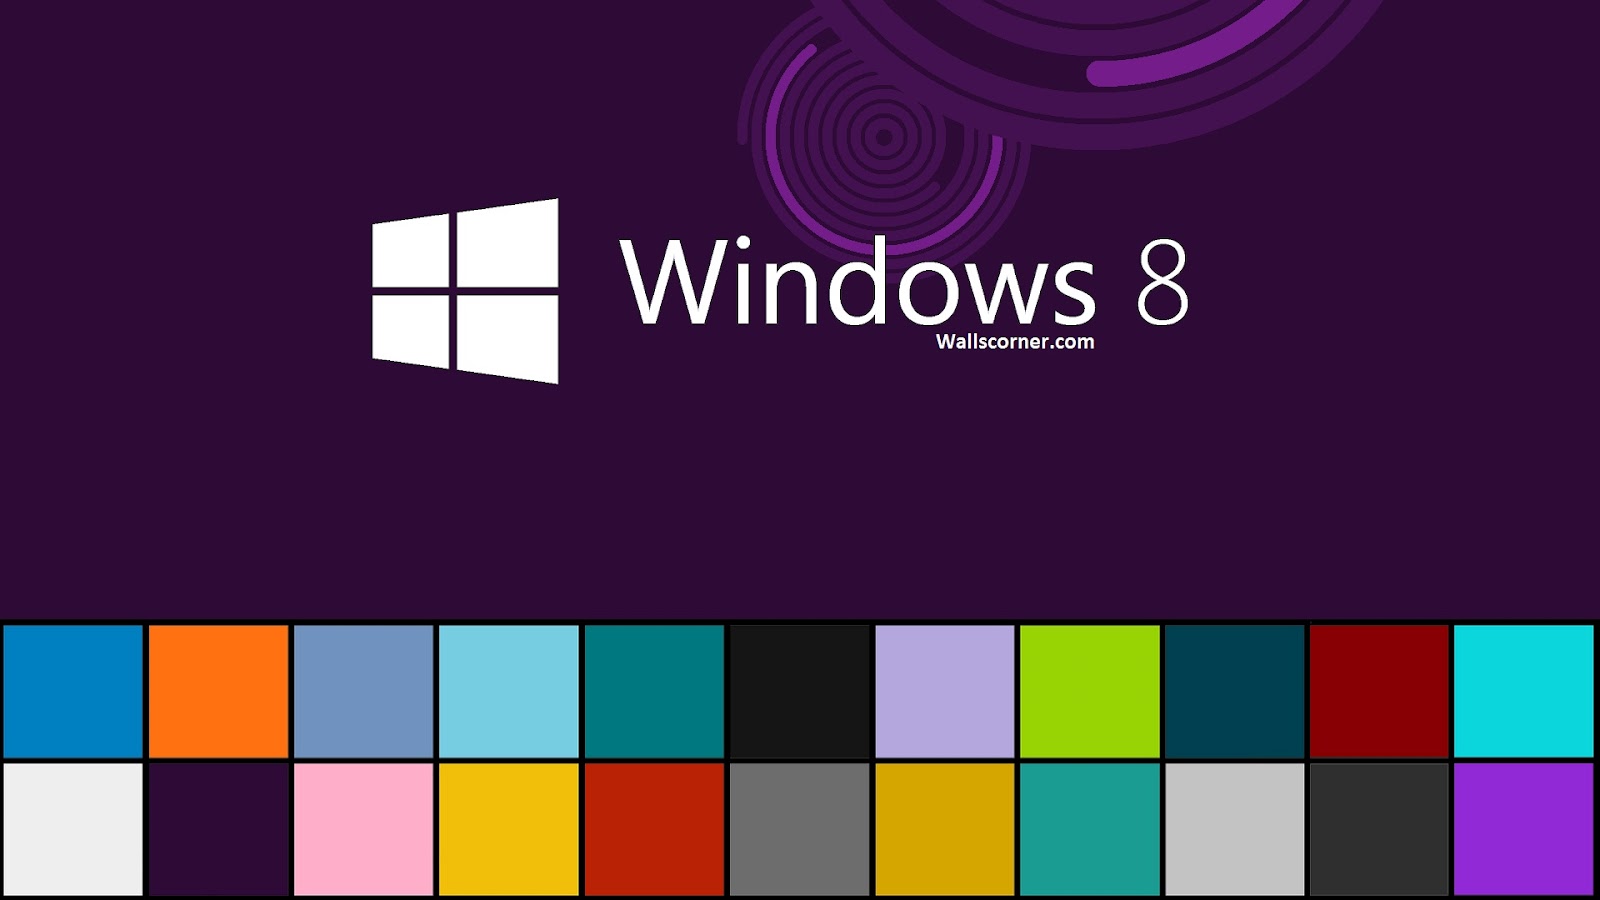 Windows 8 Wallpaper , HD Wallpaper & Backgrounds